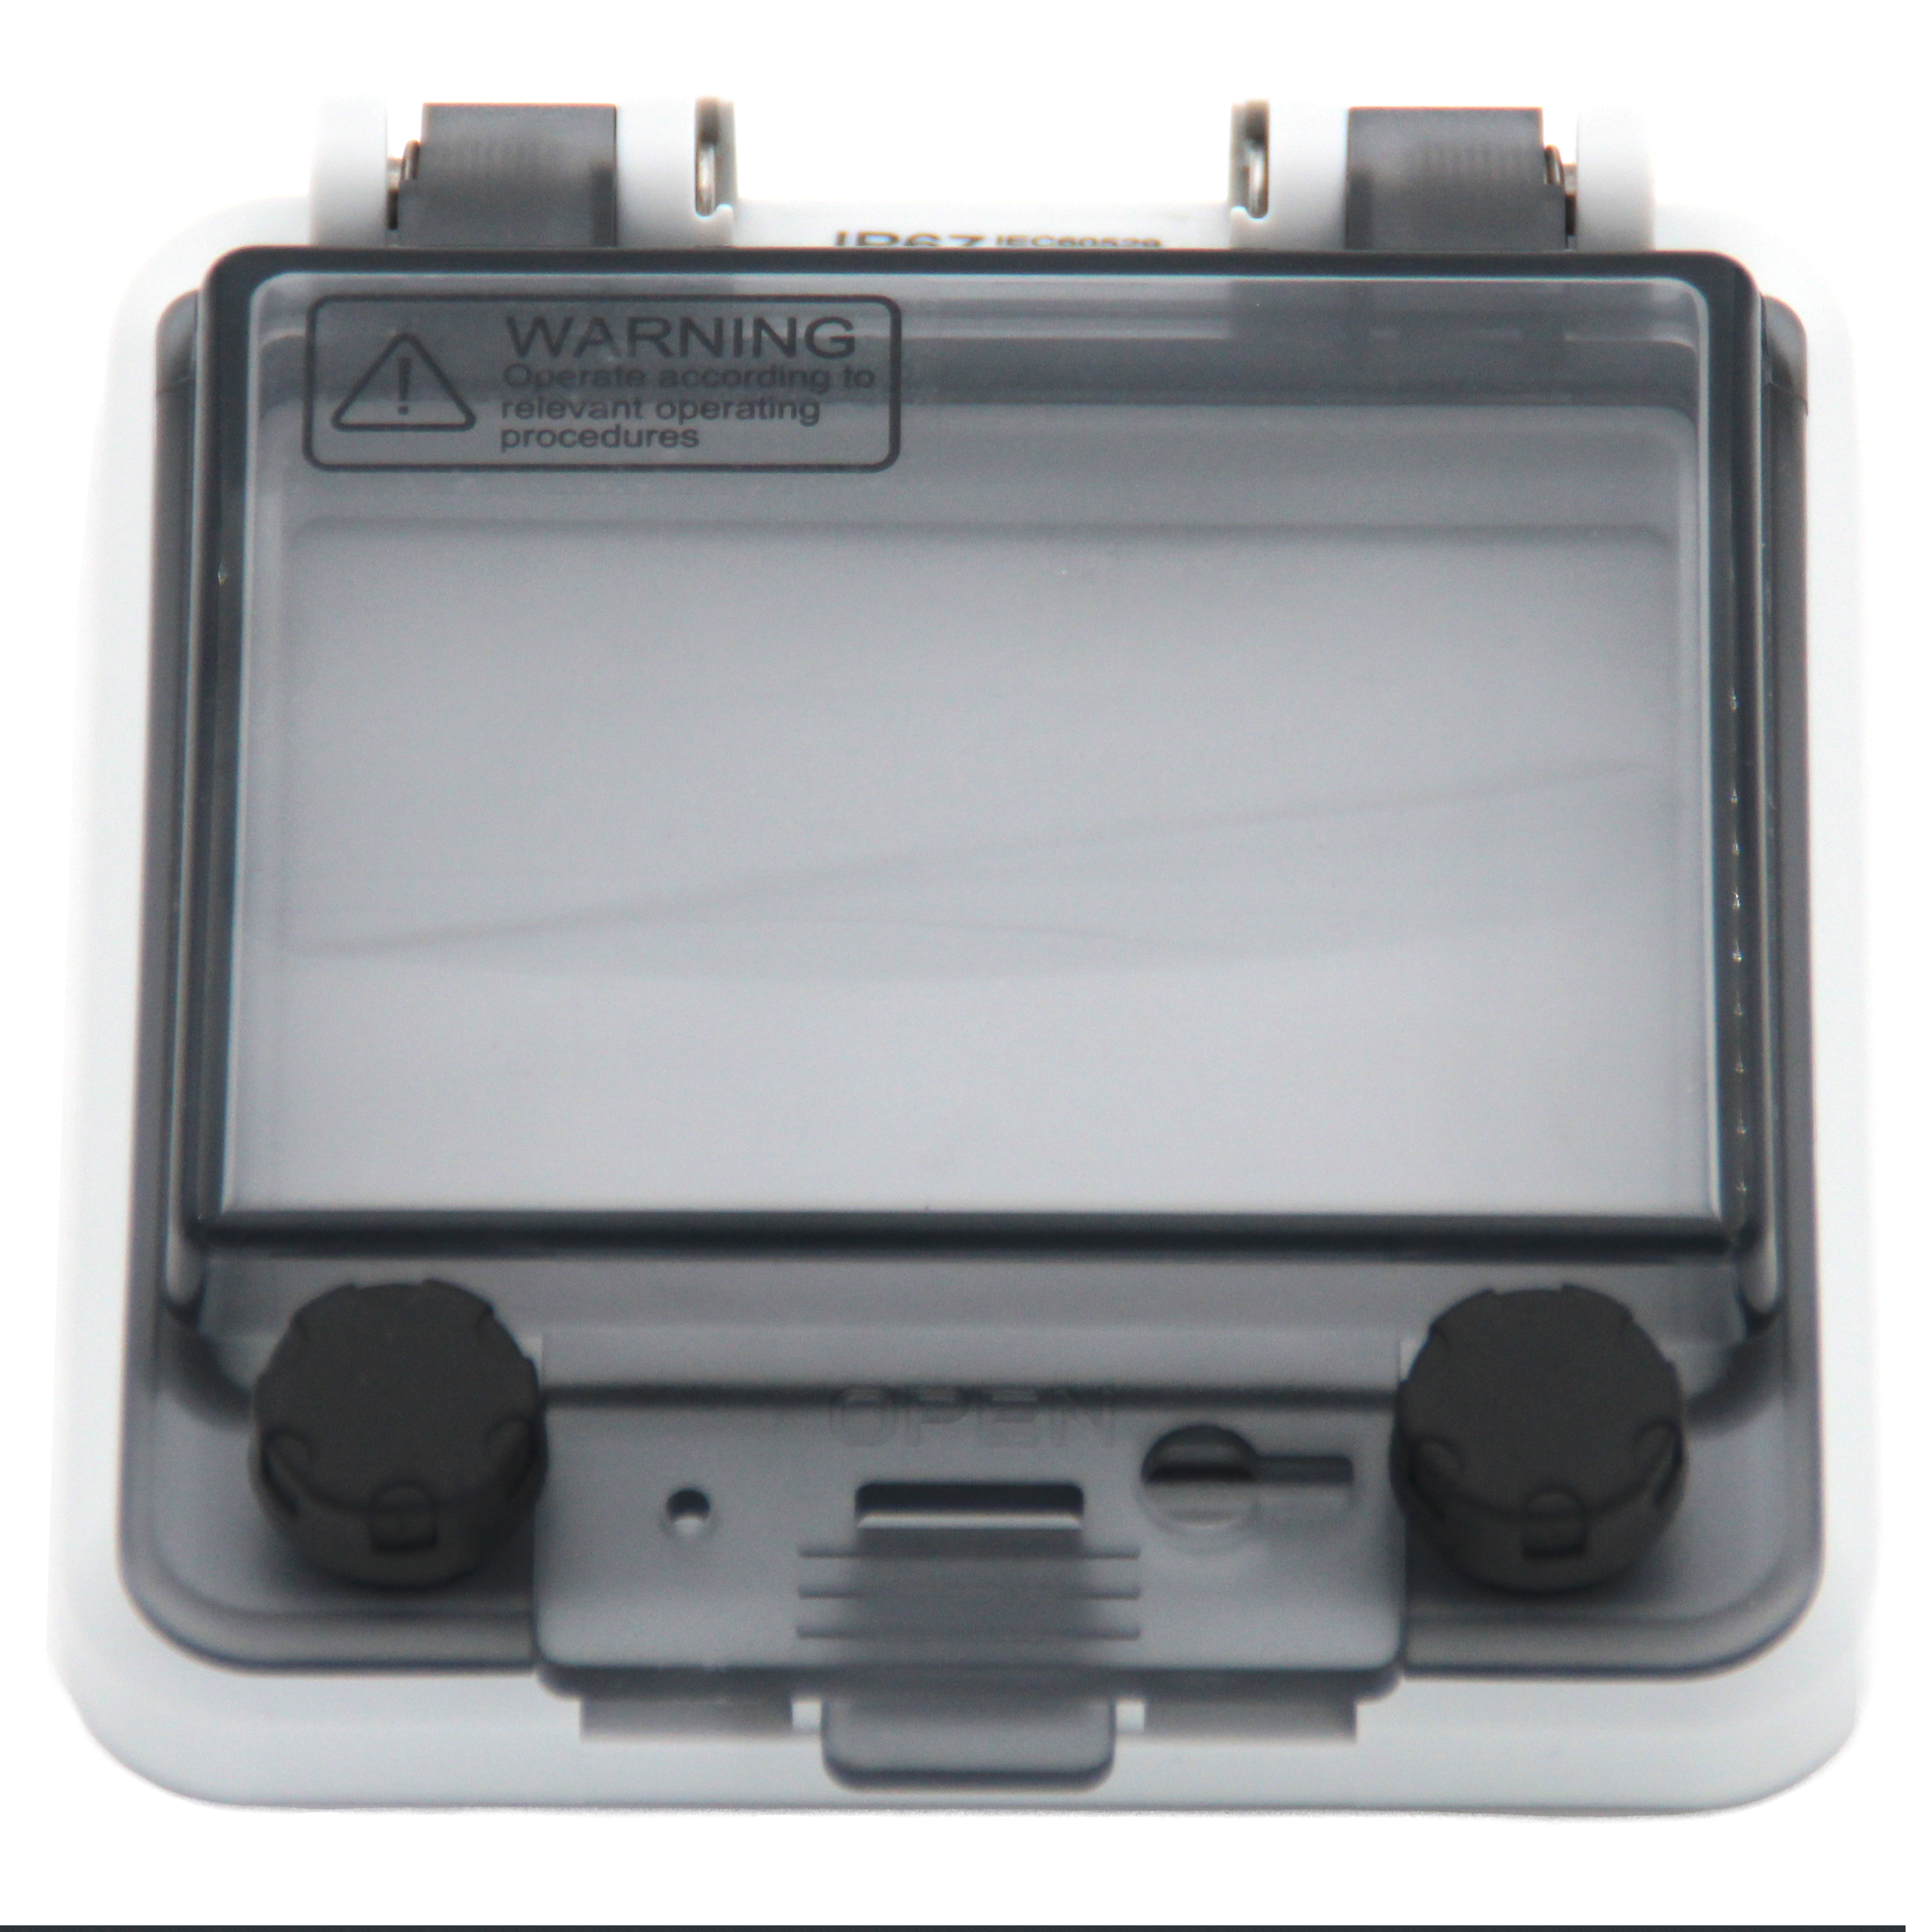 Kutia mbrojtëse e shpërndarjes së mbulesës transparente ABS Kutia elektronike e kryqëzimit